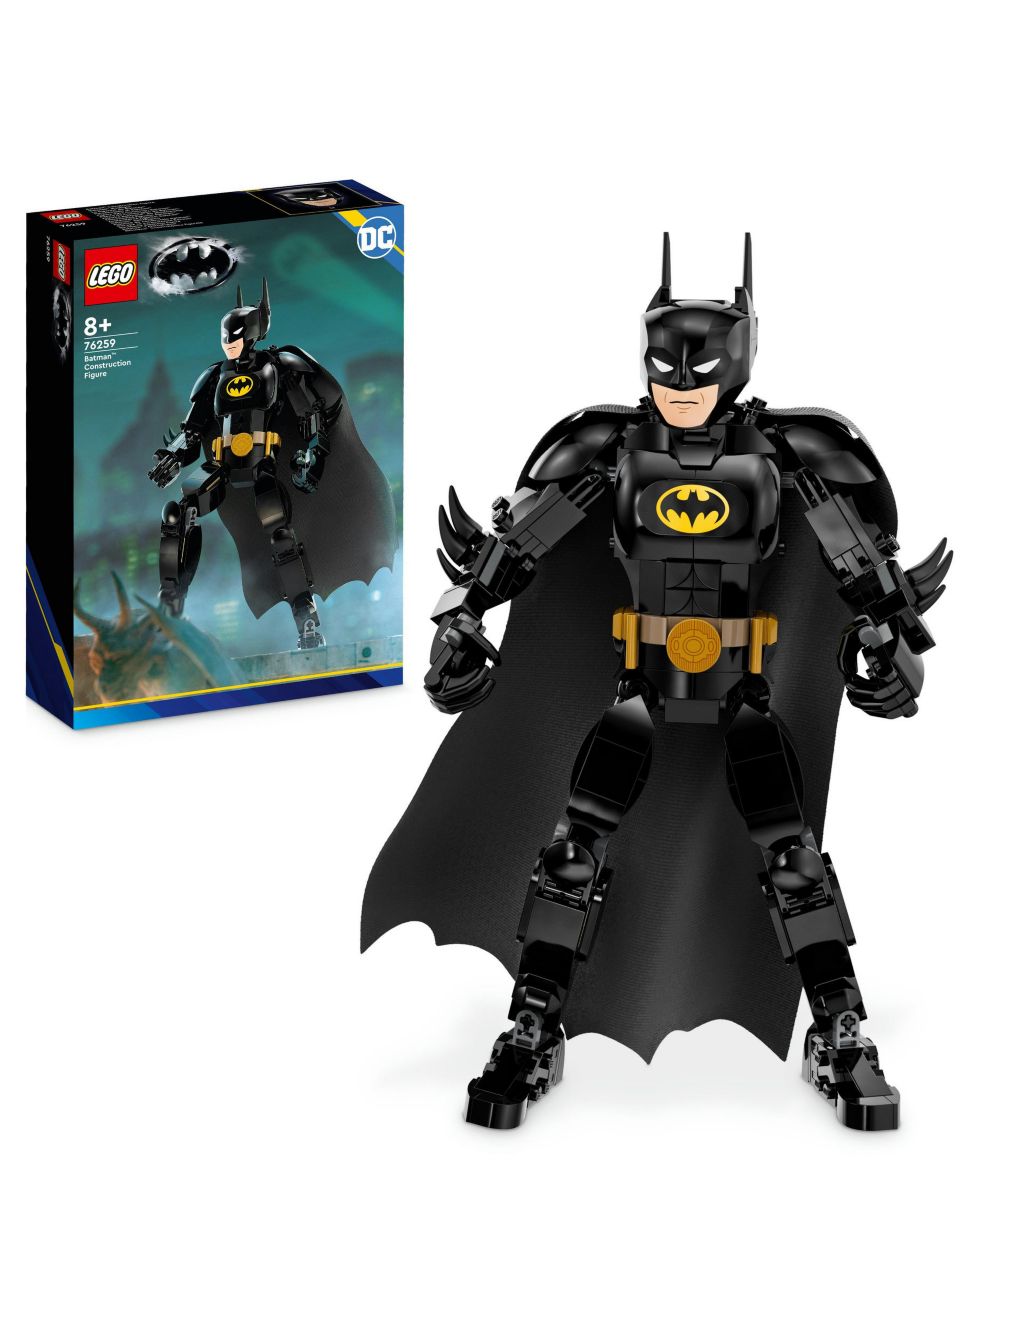 LEGO DC Batman Construction Figure Action Toy 76259 (8+ Yrs)